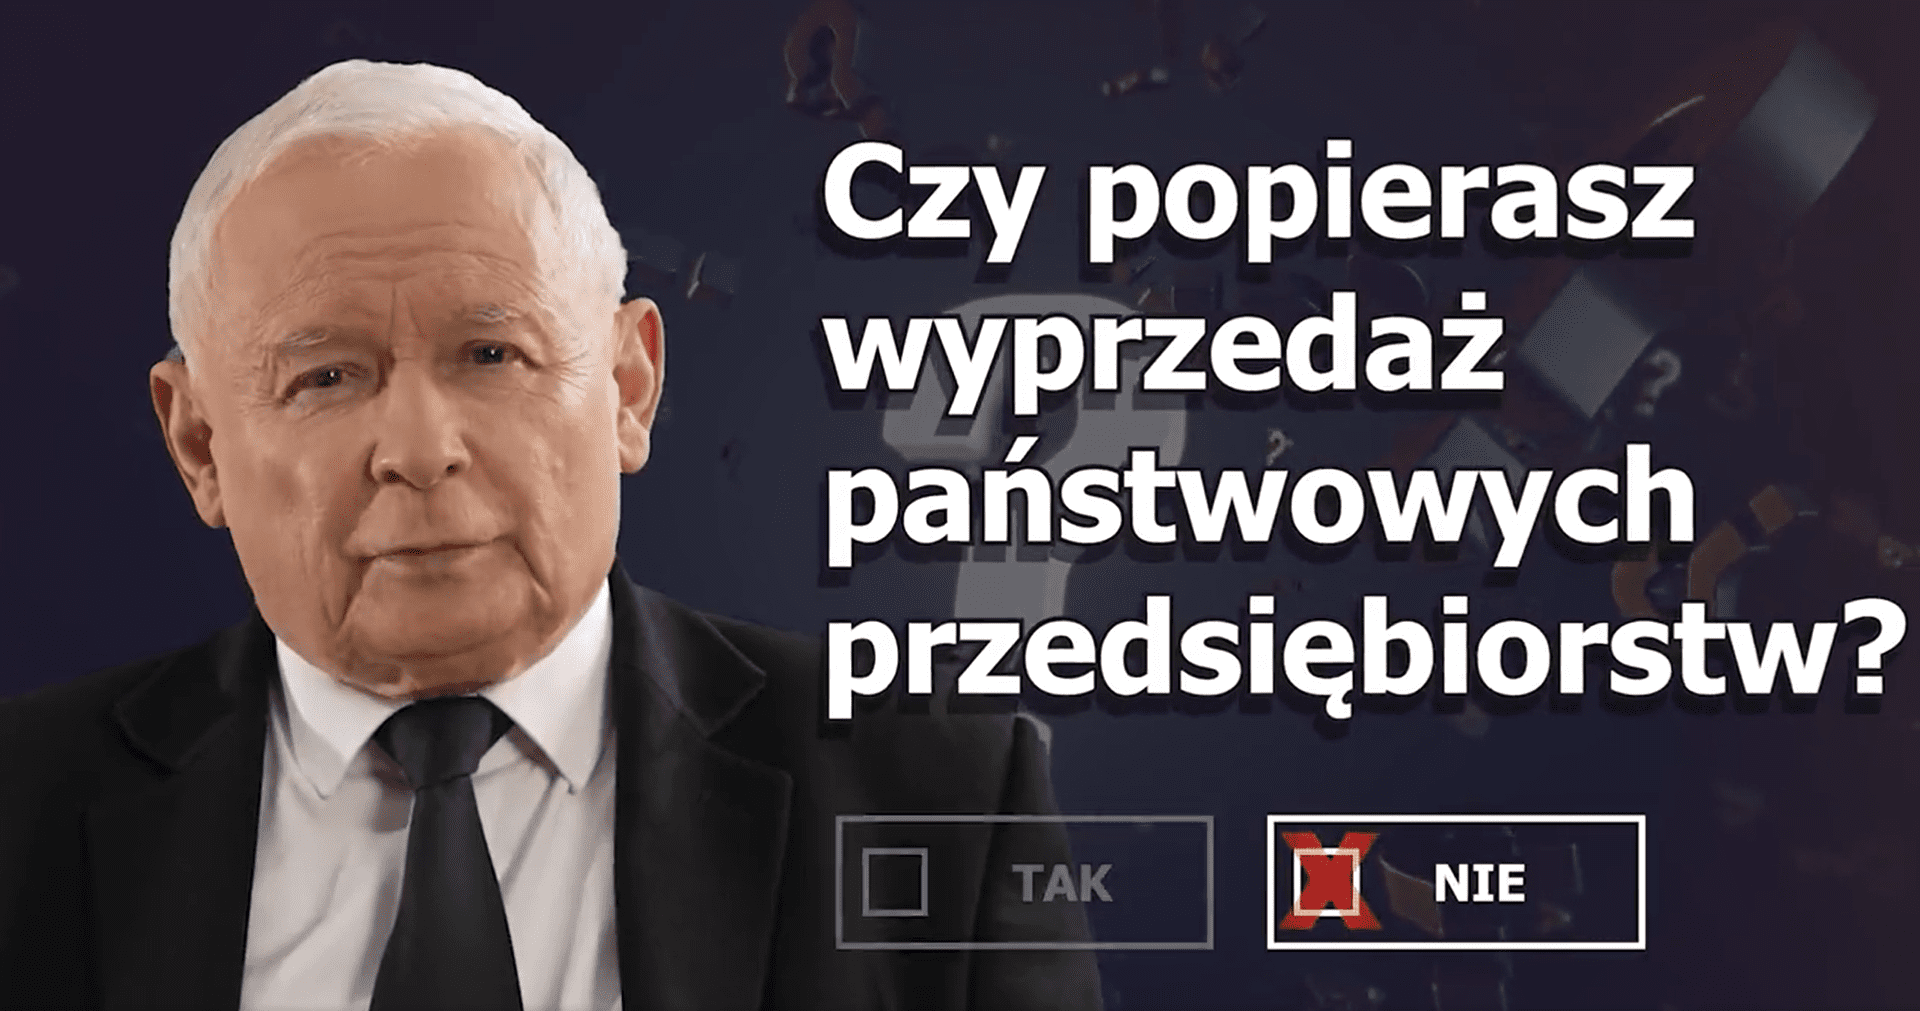 Jarosław Kaczyński po lewej i napis po prawej, a pod napisem zaznaczona opcja nie